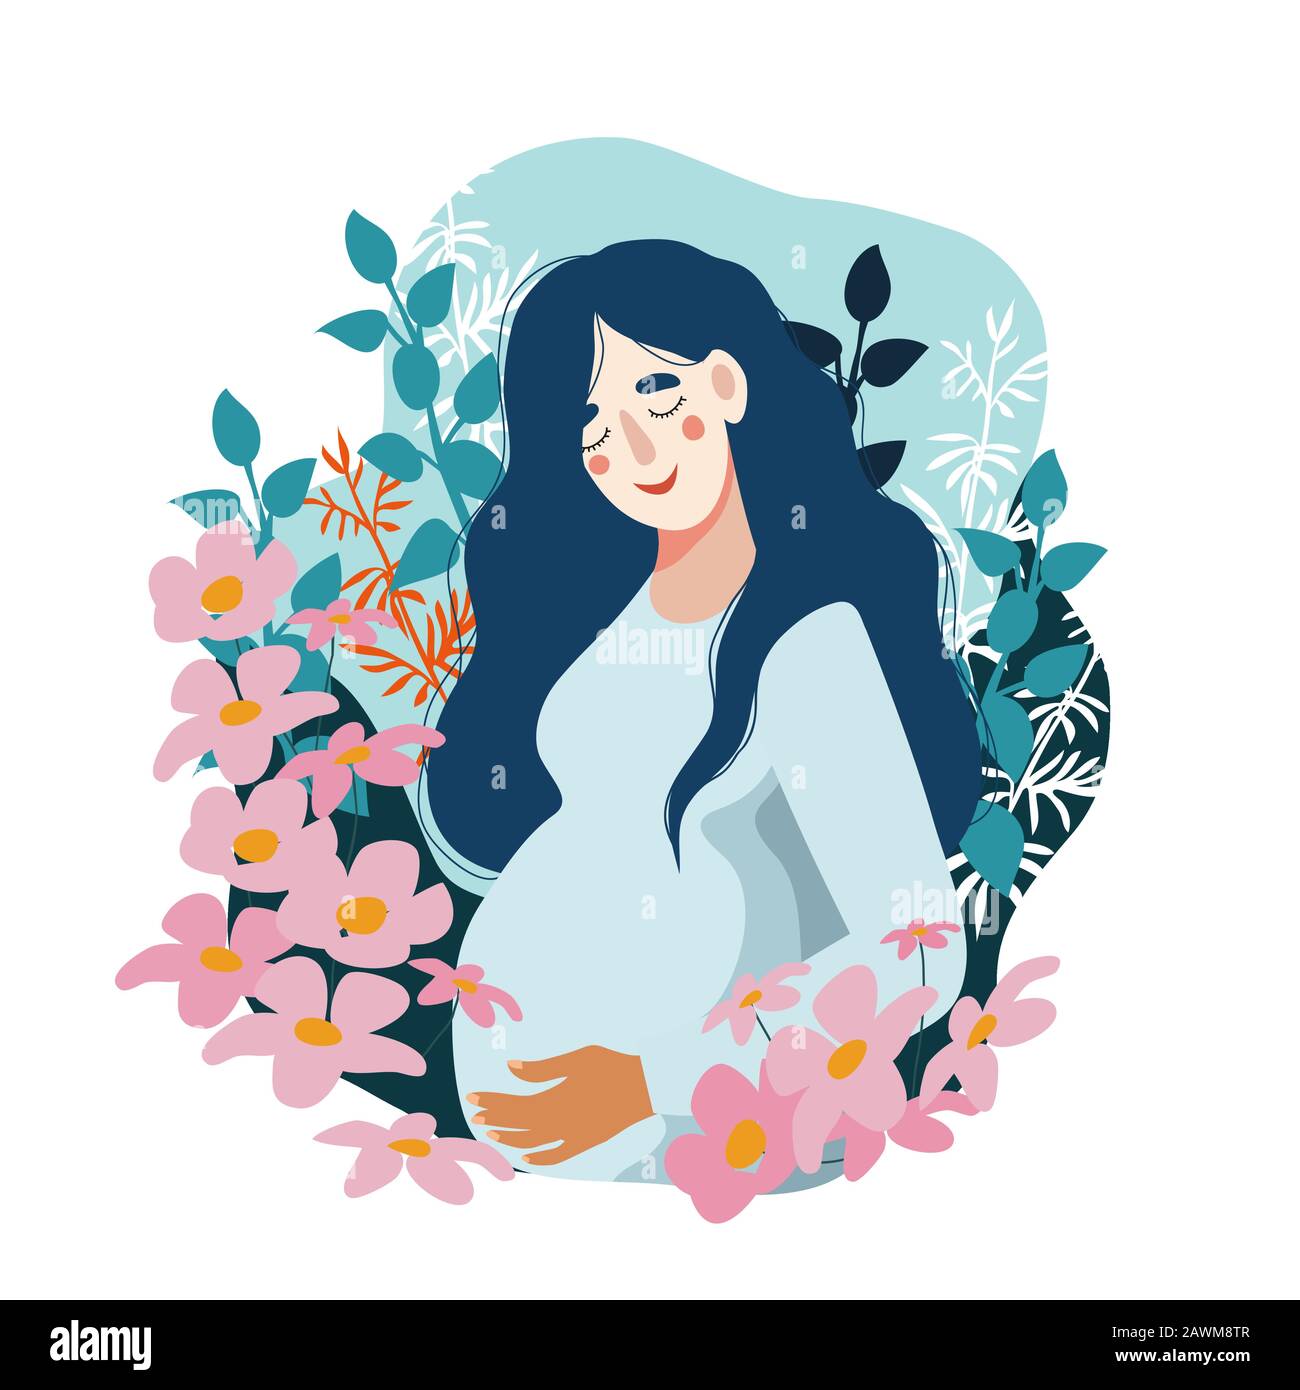 Buona Festa Della Mamma. Donna incinta circondata da molti fiori. Illustrazione piatta Vector cute isolata. Illustrazione Vettoriale